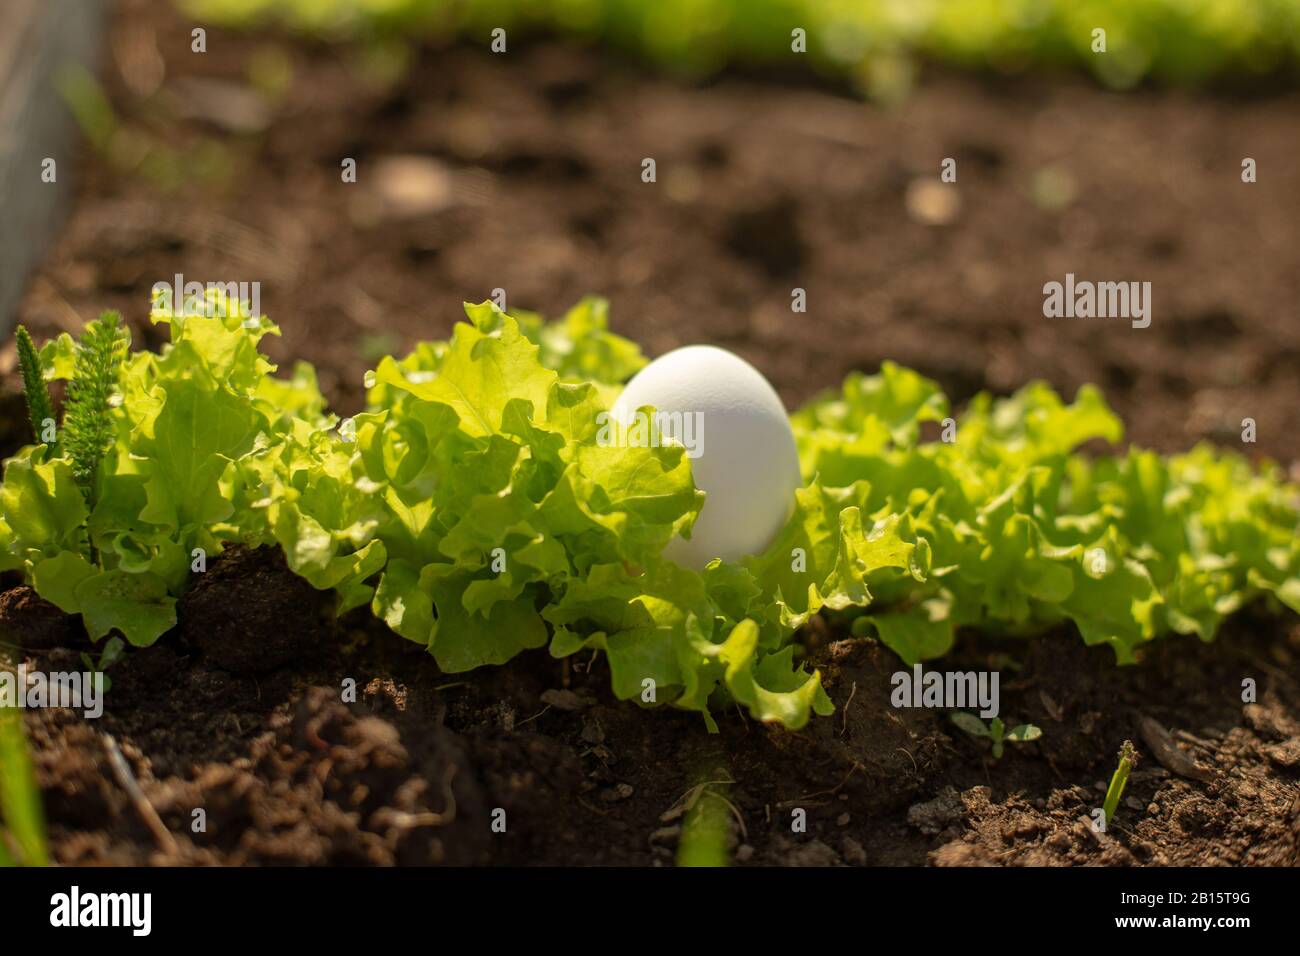 Weißes Ei liegt im jungen, frischen grünen Salat, der im Garten wächst. Bio Food Konzept. Nahaufnahme. Stockfoto